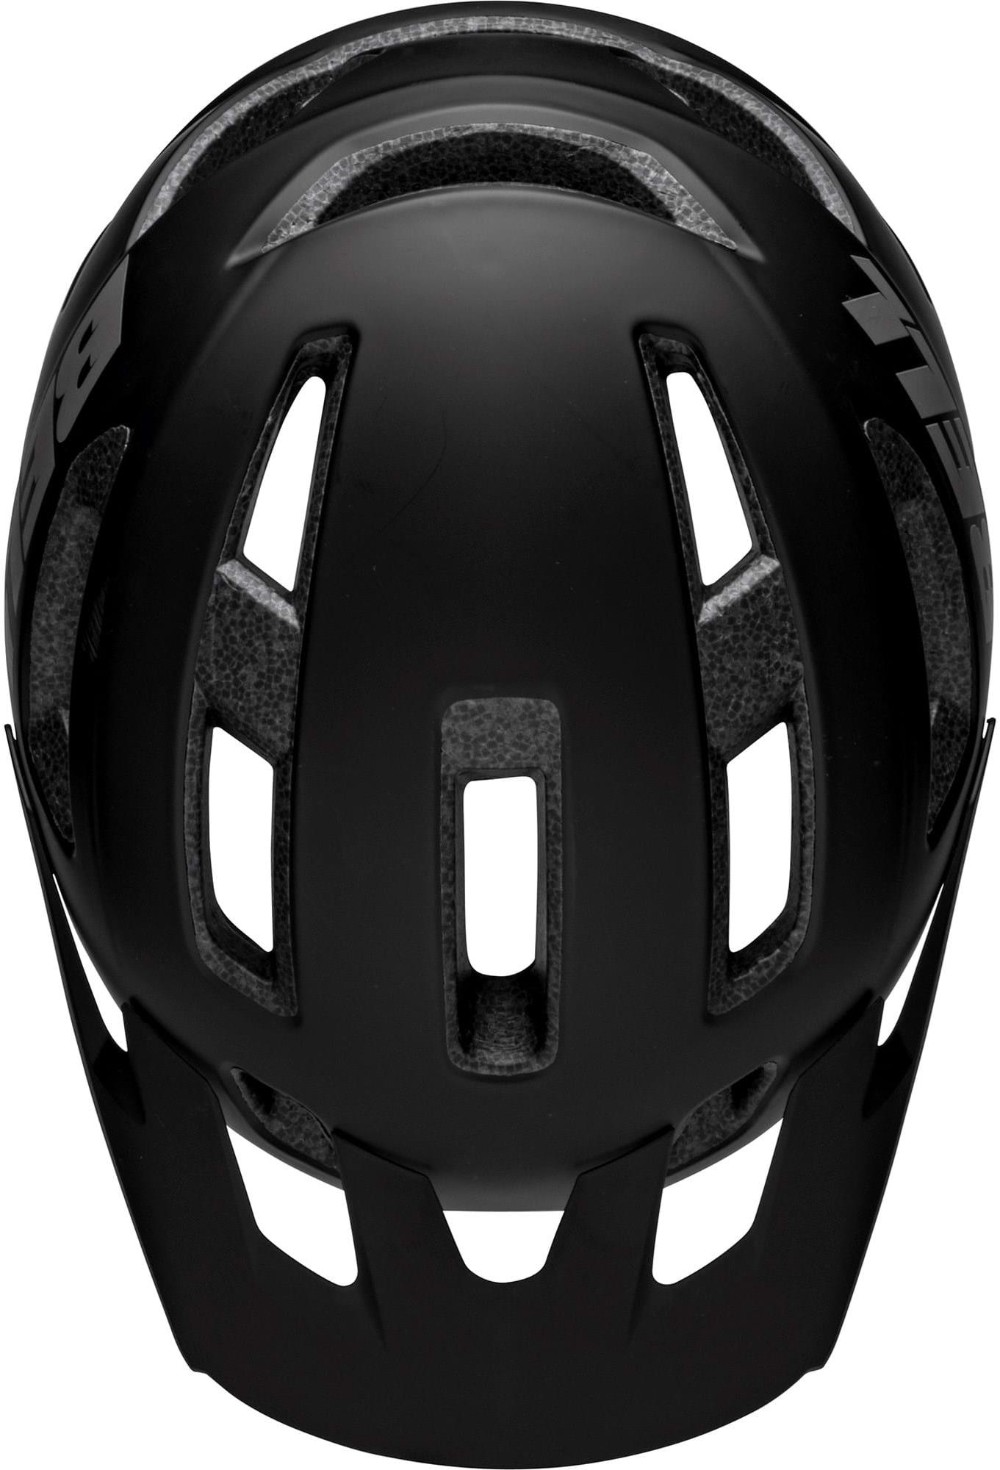 Nomad 2 MTB Helmet image 1